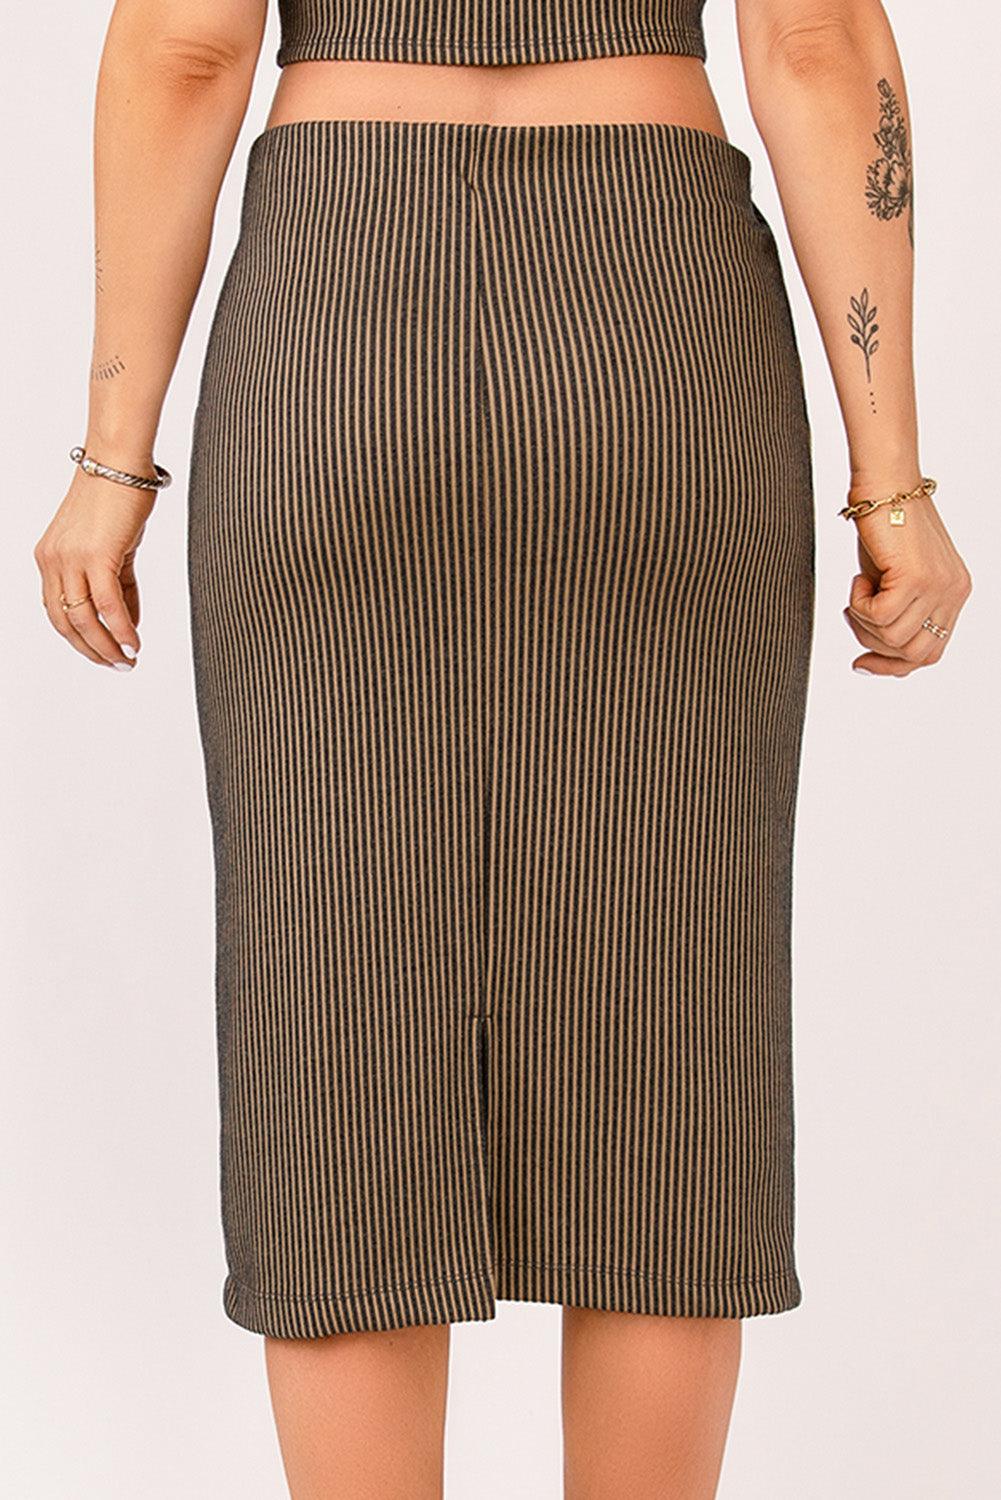 Striped Bodycon Midi Skirt - L & M Kee, LLC